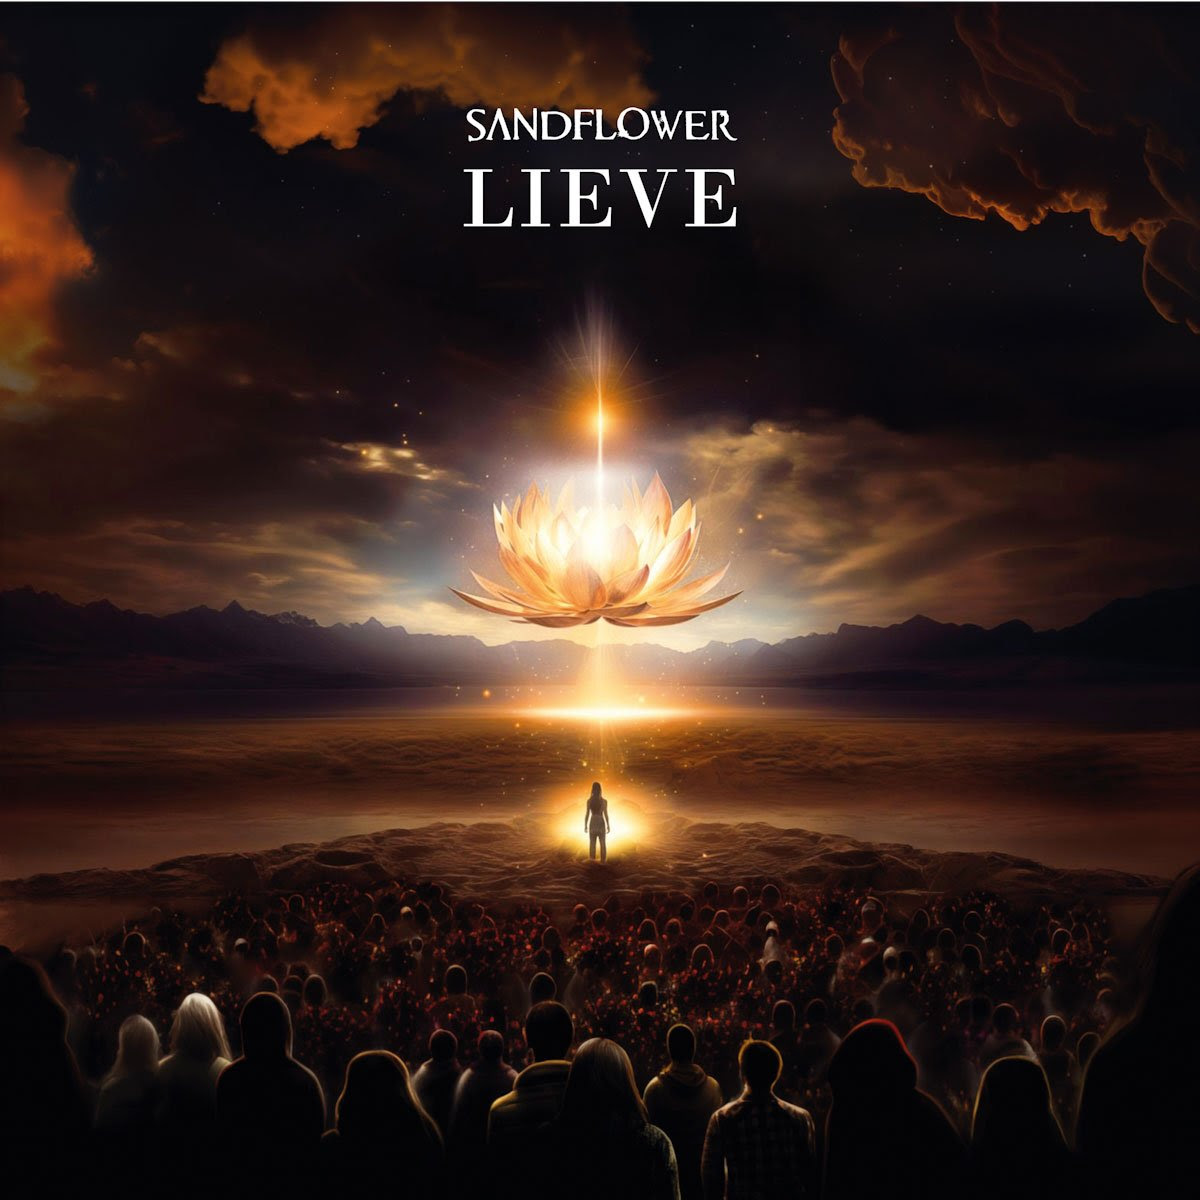 SANDFLOWER: da venerdì 7 giugno disponibile in digitale e in formato fisico “LIEVE” il nuovo album